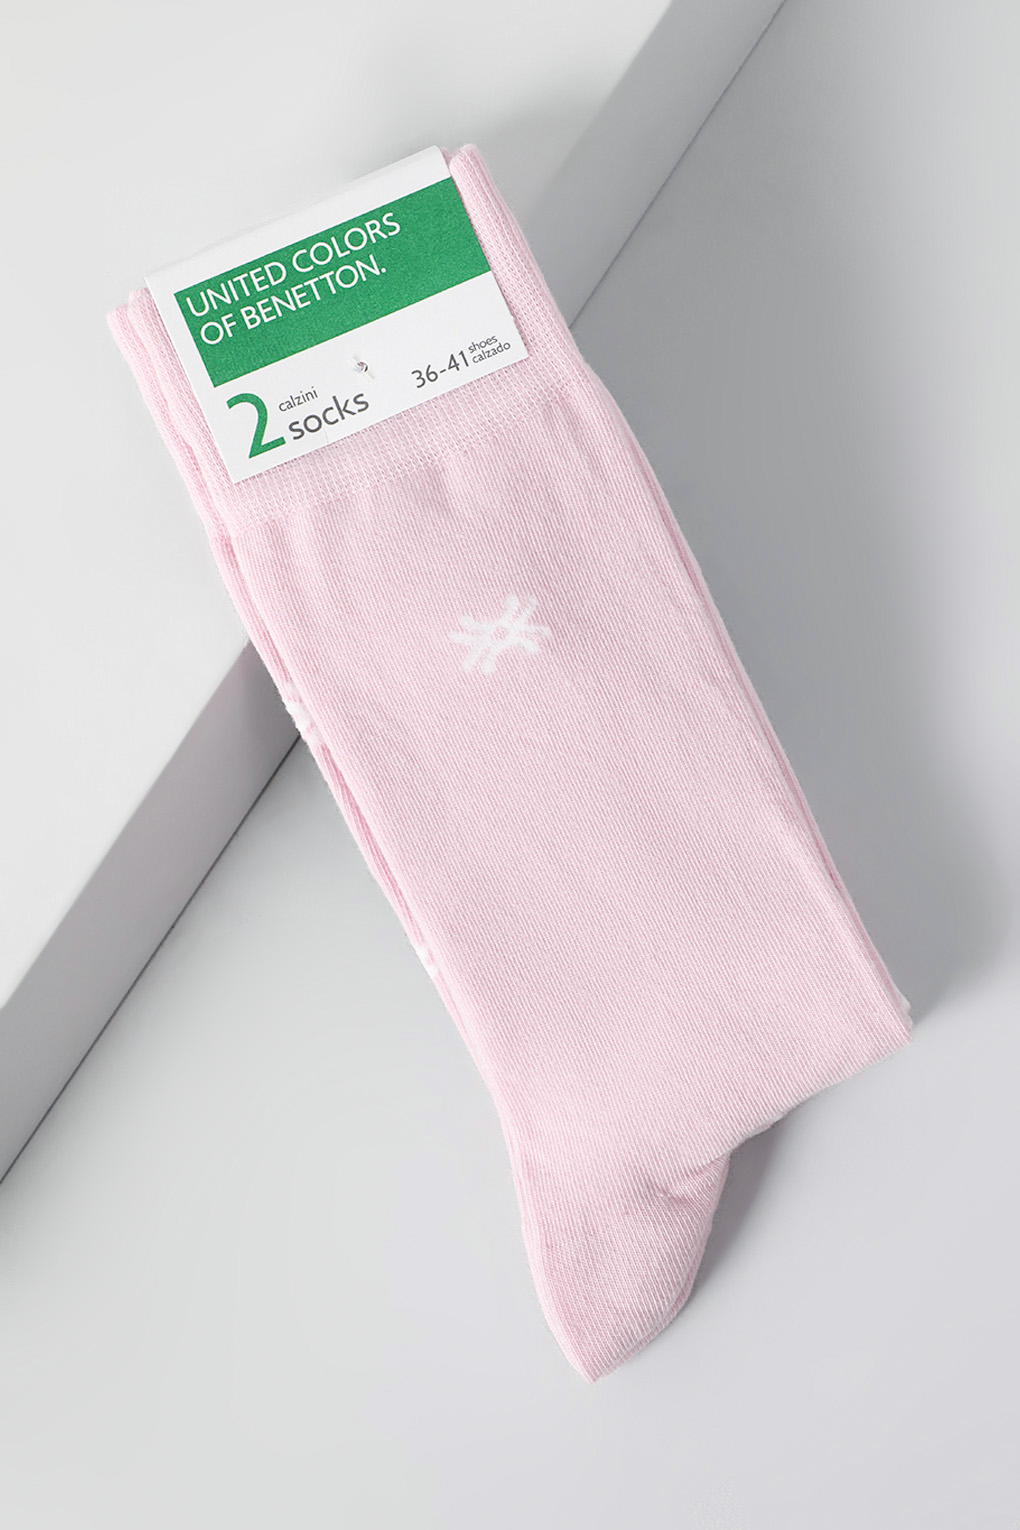 Комплект носков женских Benetton Undercolors 6AO32701P розовых 36-38